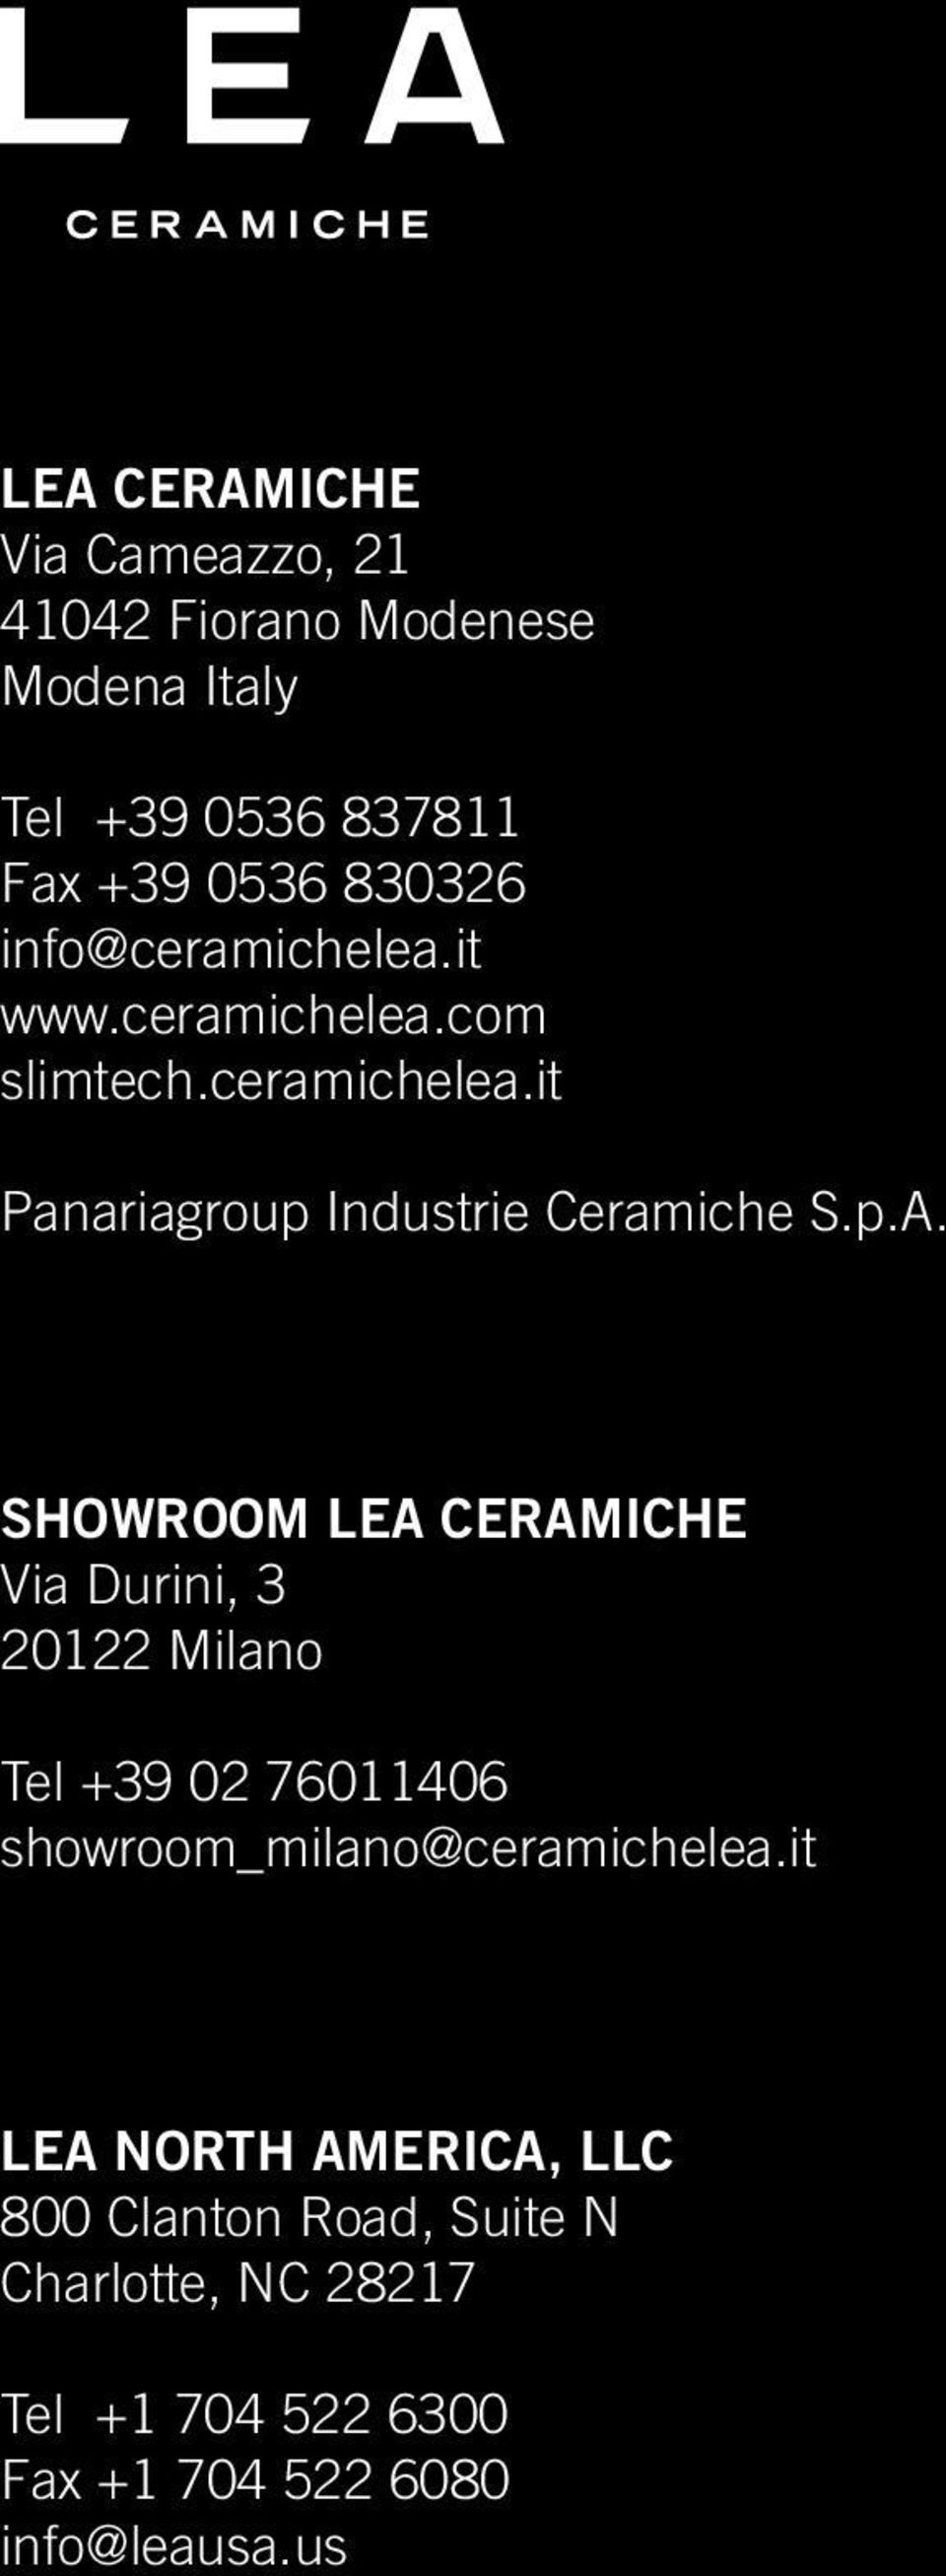 SHOWROOM LEA CERAMICHE Via Durini, 3 20122 Milano Tel +39 02 76011406 showroom_milano@ceramichelea.